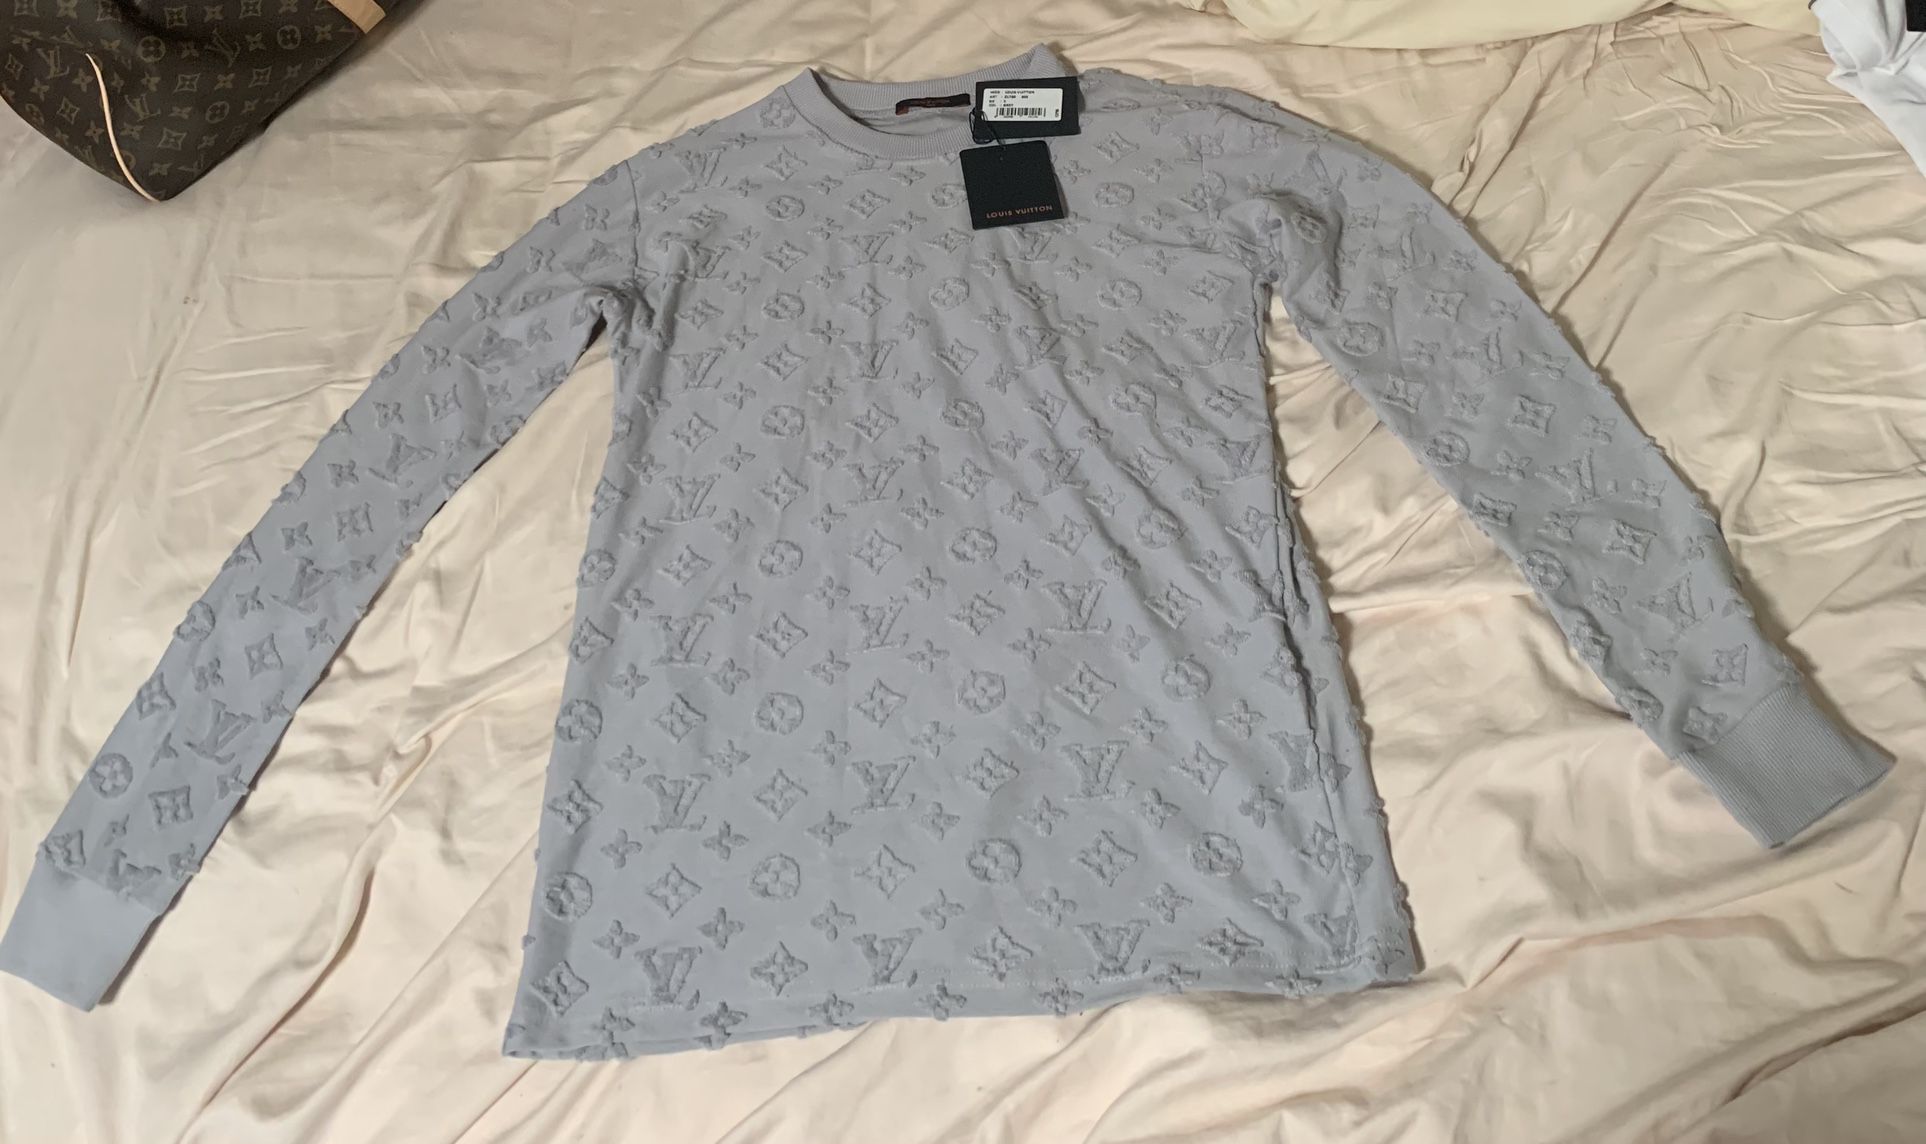 Louis Vuitton Long-sleeved Shirt